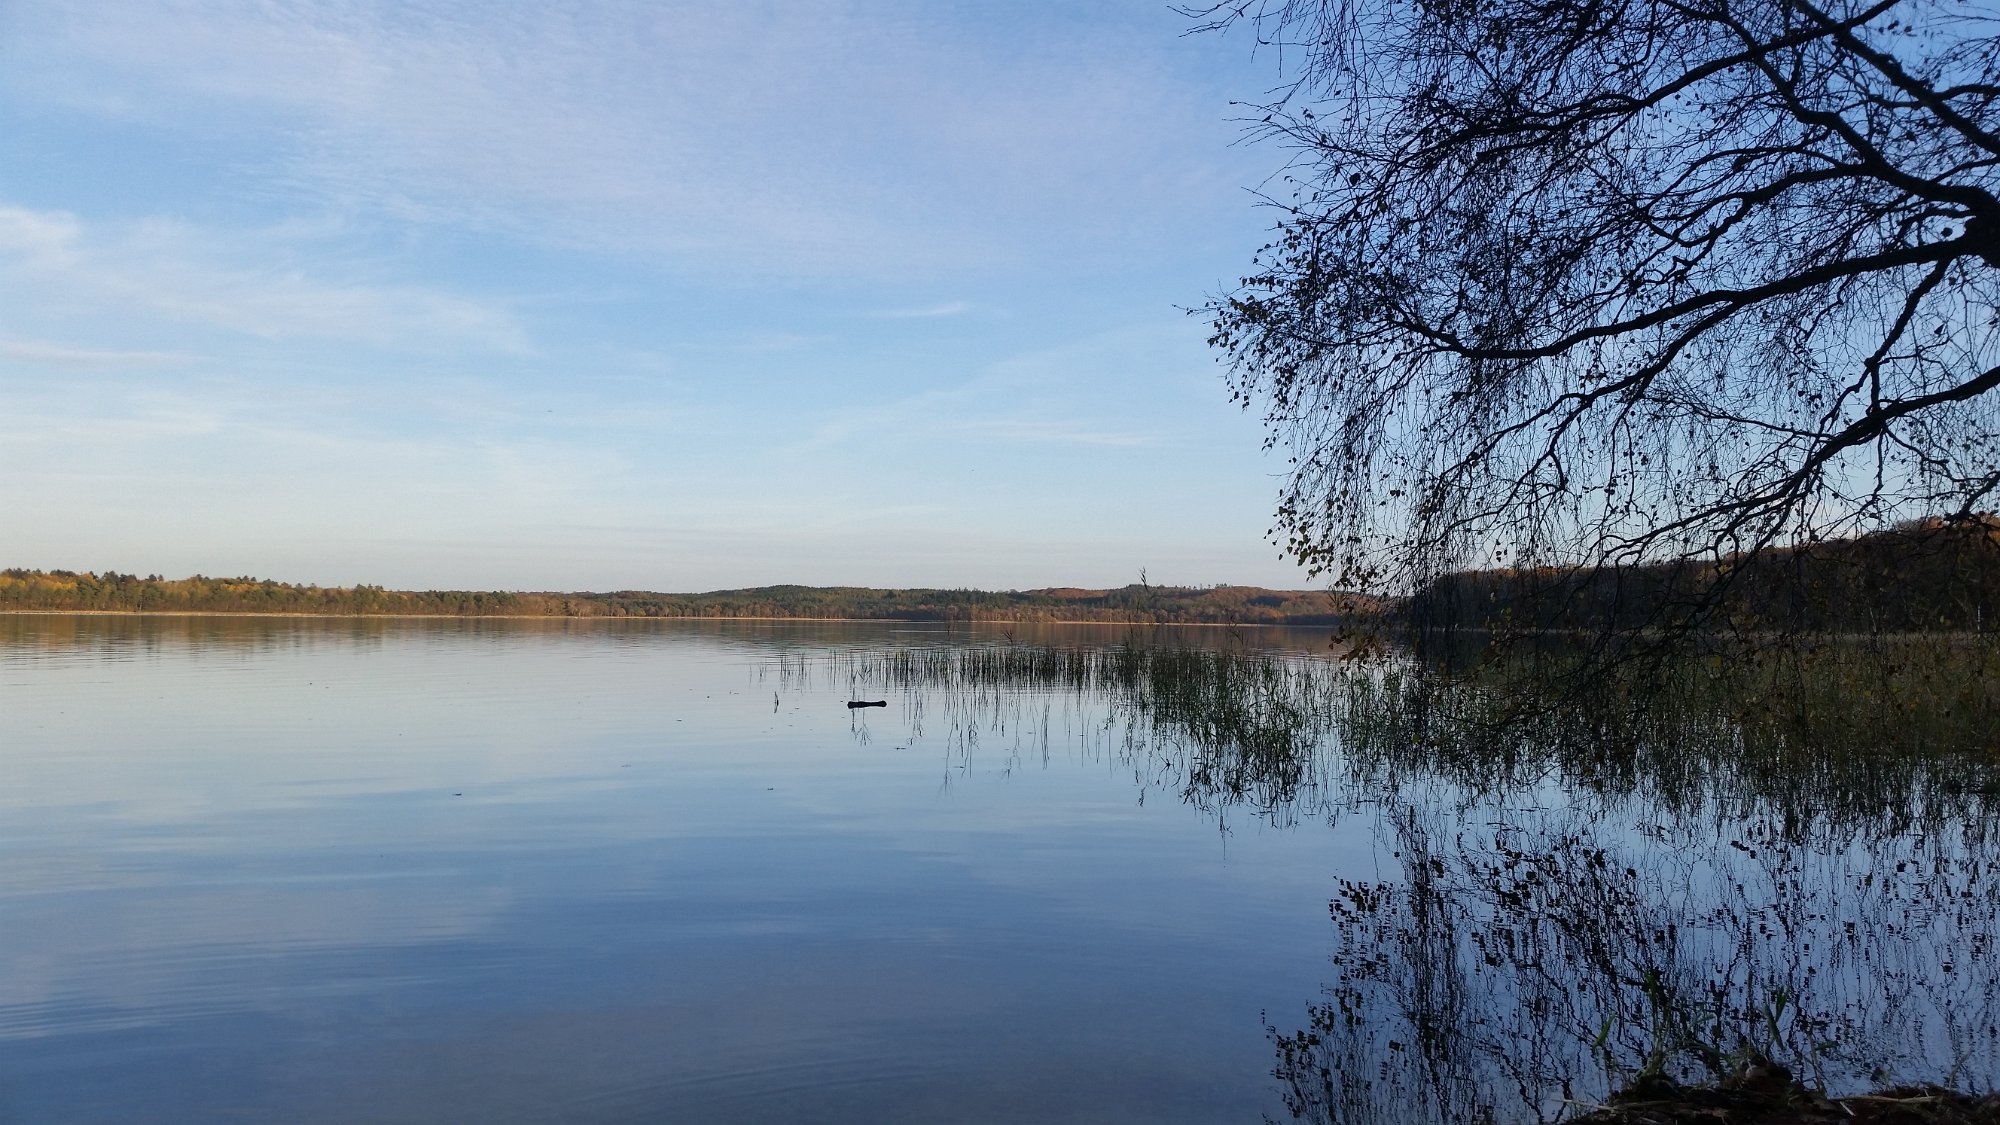 20151026_155958.jpg - En smut forbi Madum sø. Meget rent vand.